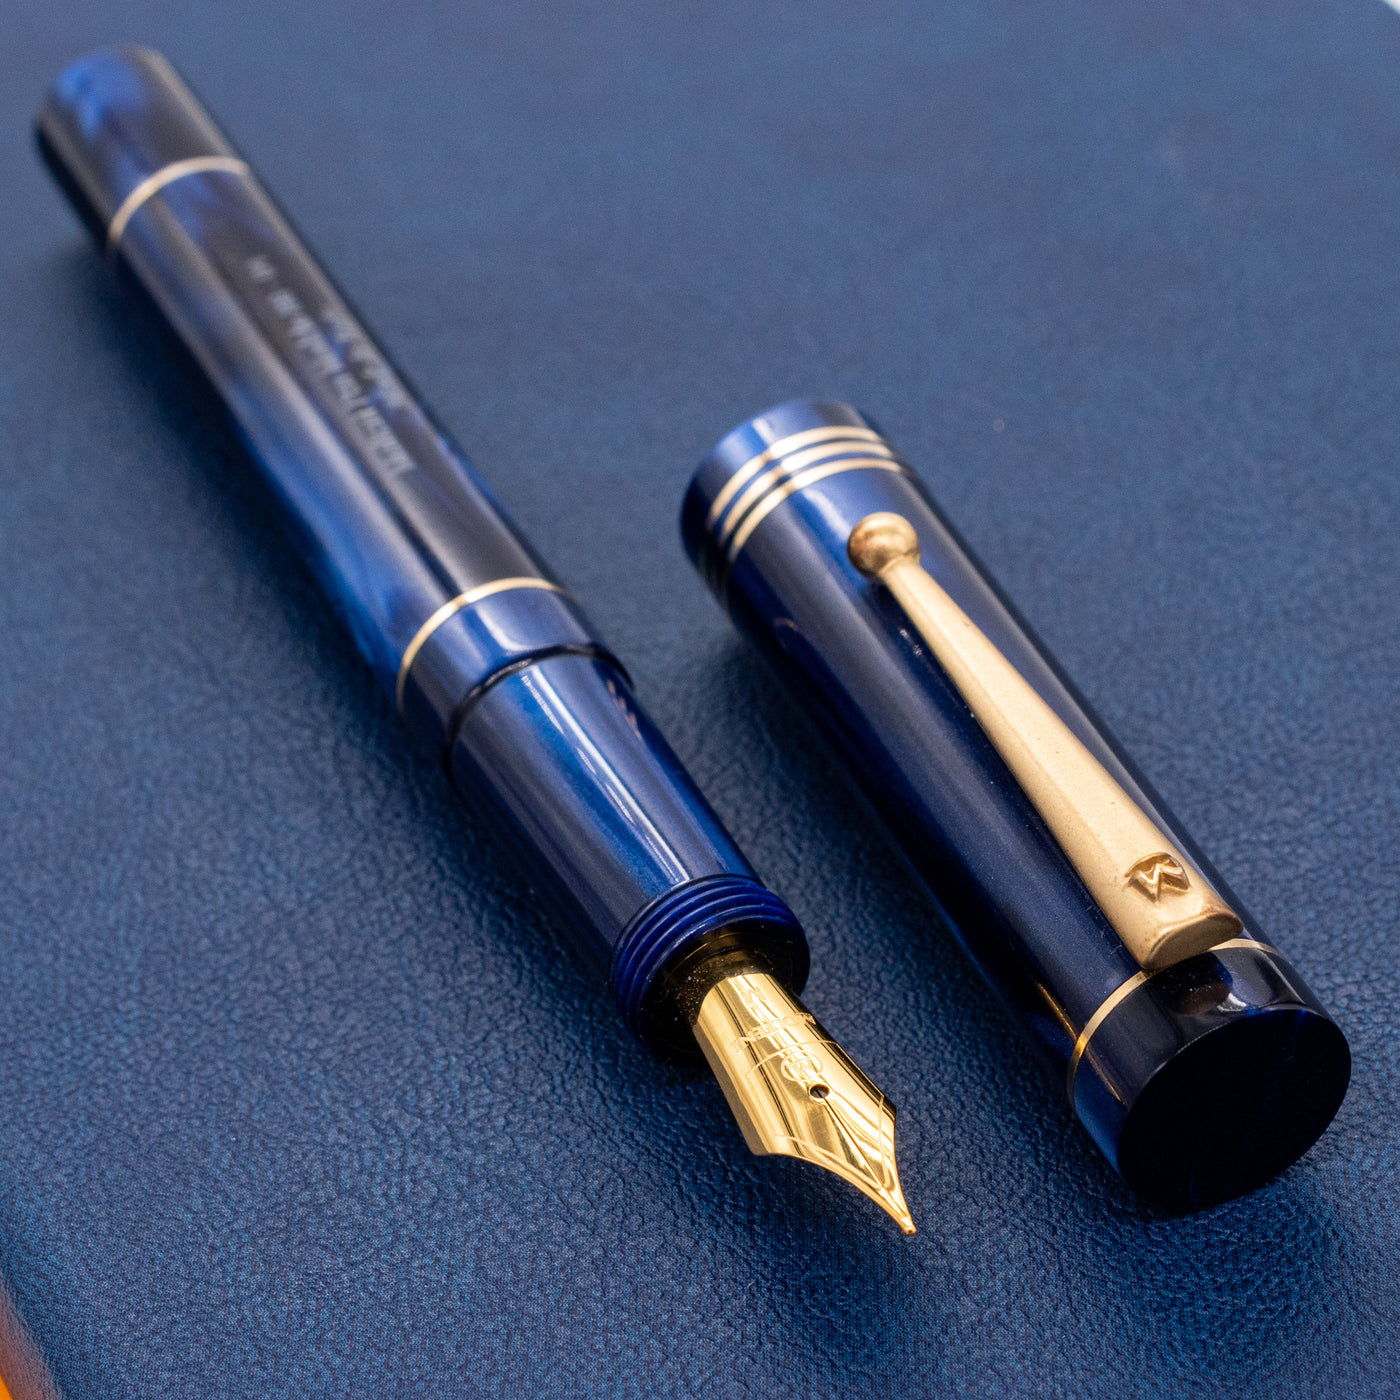 Molteni Modelo 88 Fountain Pen - Midnight Blue gold trim